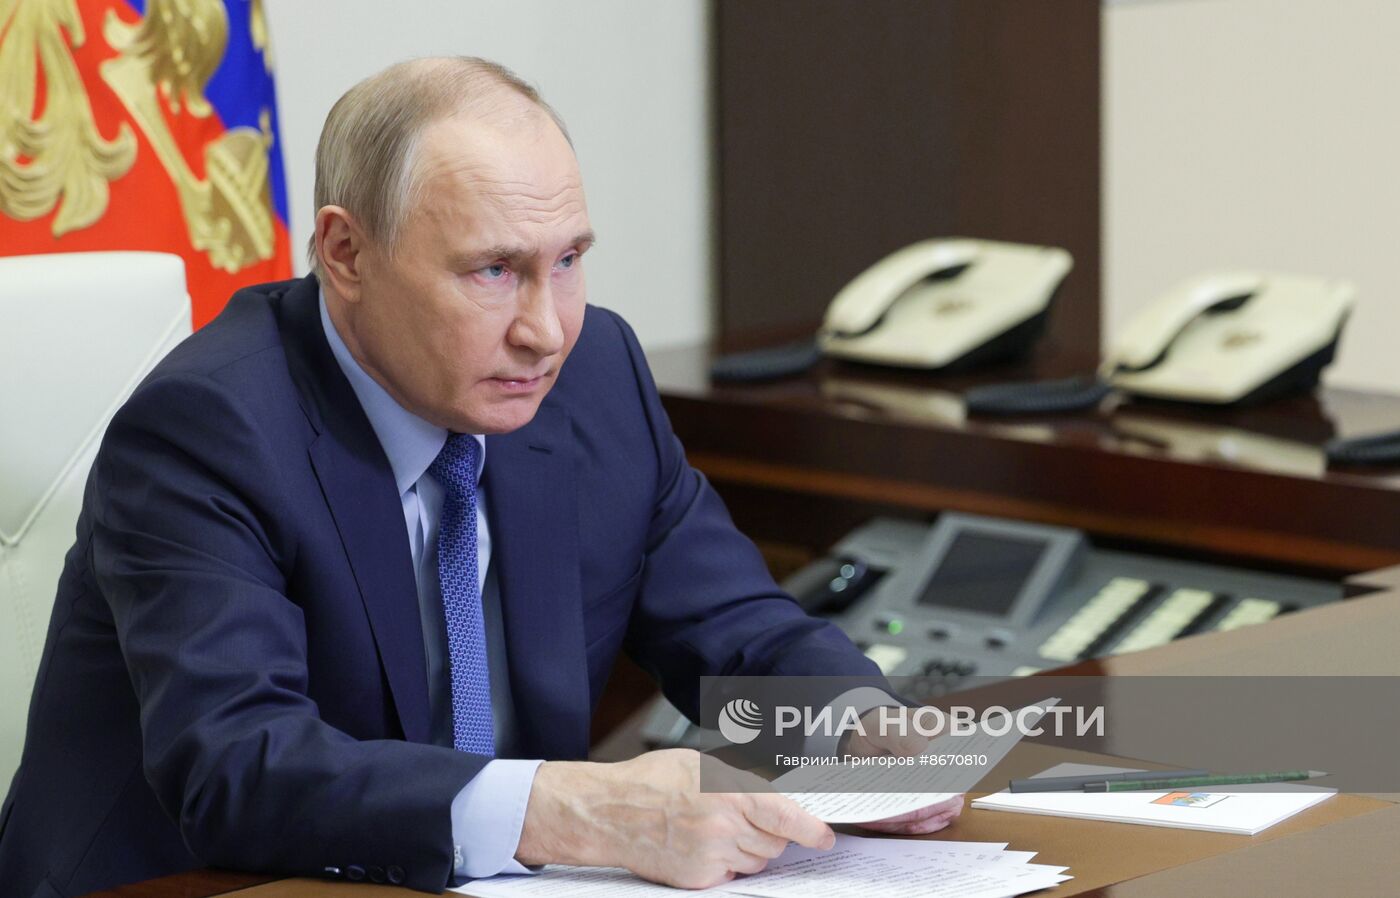 Президент Владимир Путин провел совещание по экономическим вопросам